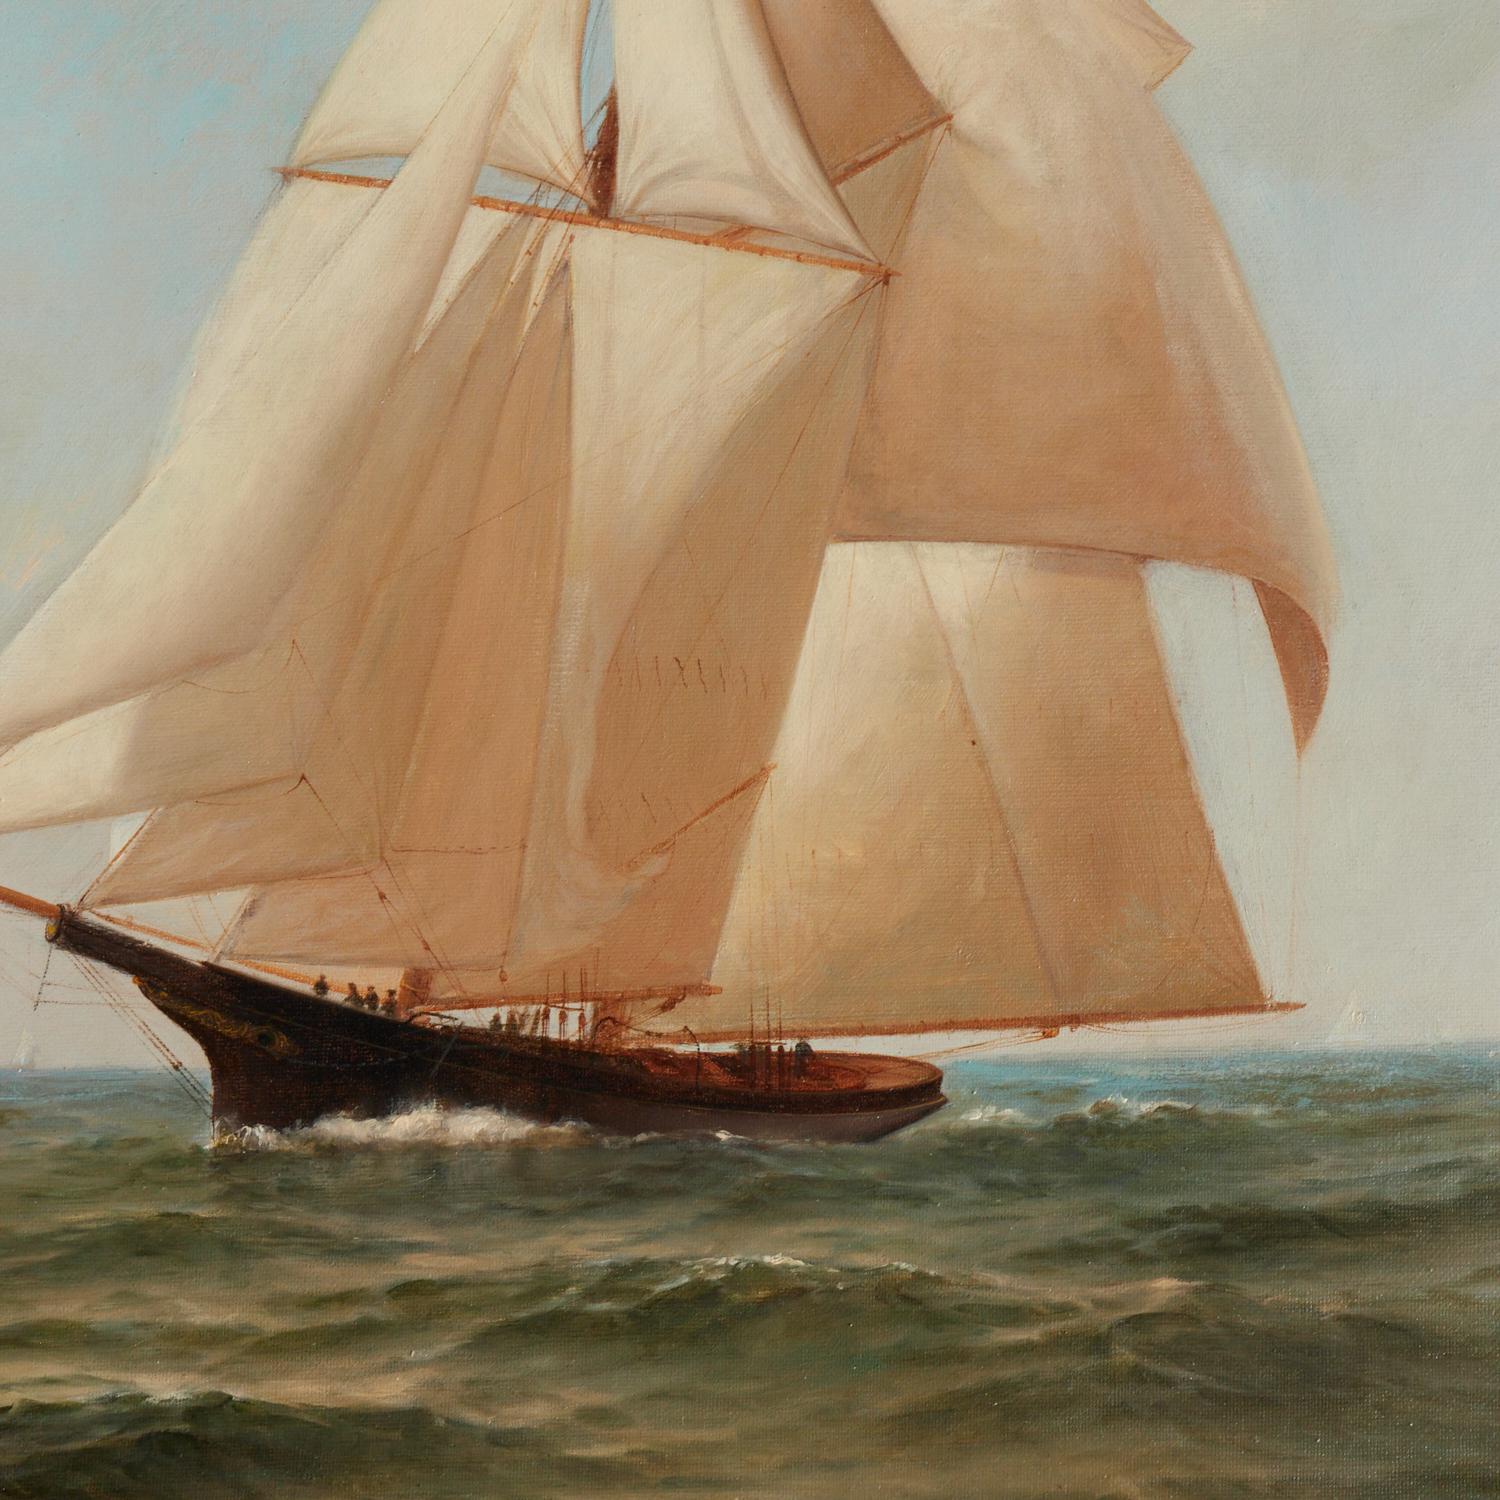 Warren W. Sheppard (Amerikaner, 1858-1937), Yachtrennen, möglicherweise der America's Cup, signiert unten rechts. Die Yacht im Vordergrund scheint unter der Flagge des New York Yacht Club zu fahren.

Das Gemälde befindet sich in einem schönen